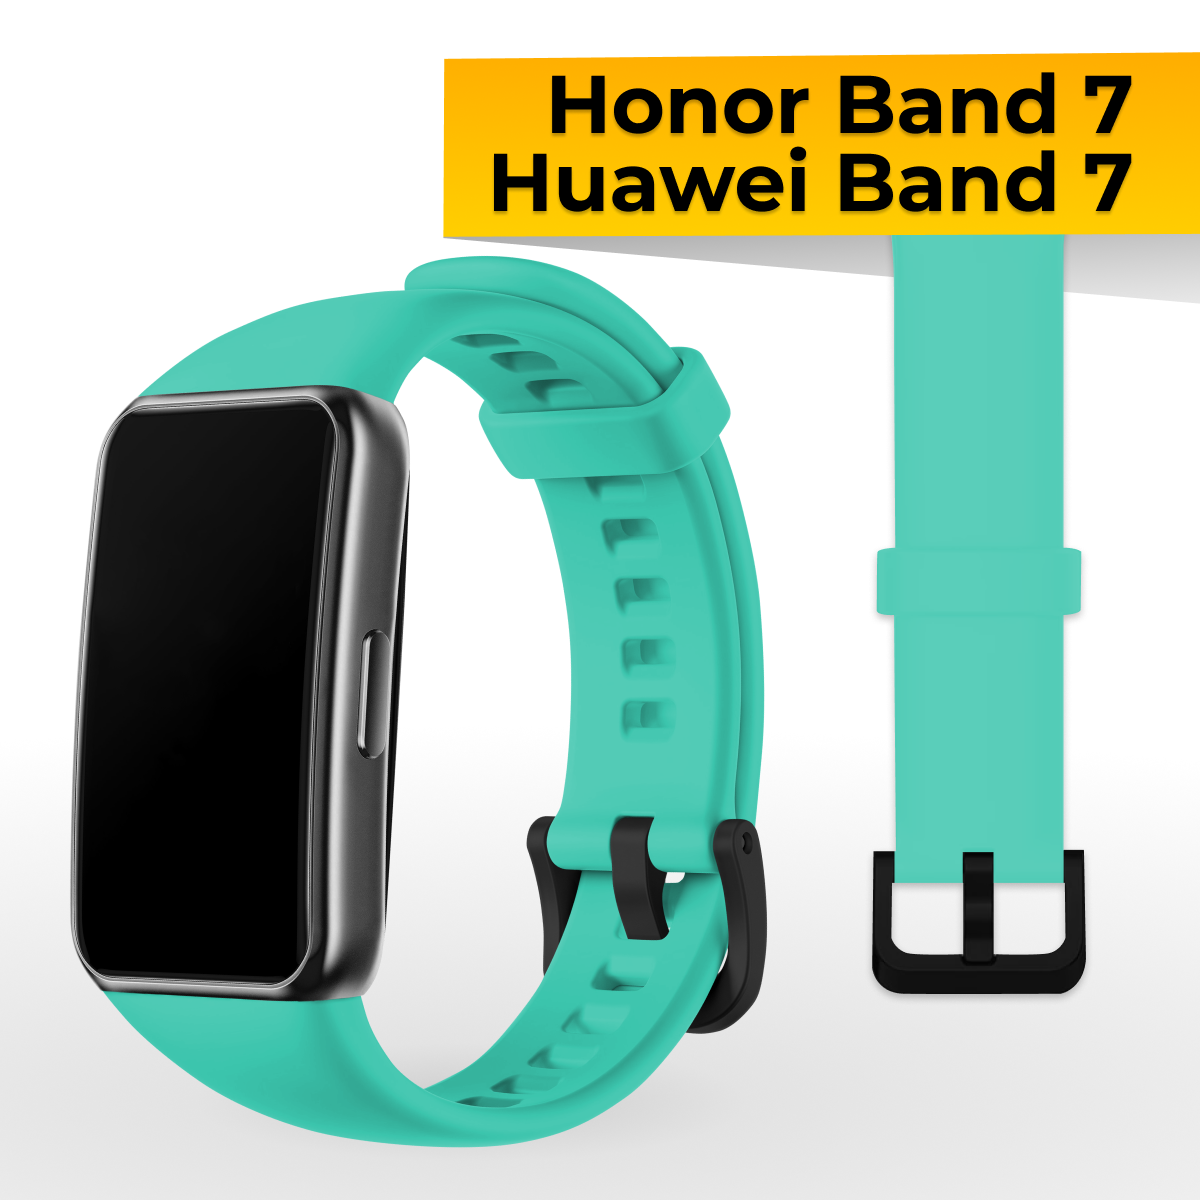 Силиконовый ремешок с застежкой для Honor Band 7 и Huawei Band 7 / Спортивный сменный браслет на часы Хонор Бэнд 7 и Хуавей Бэнд 7 / Бирюзовый